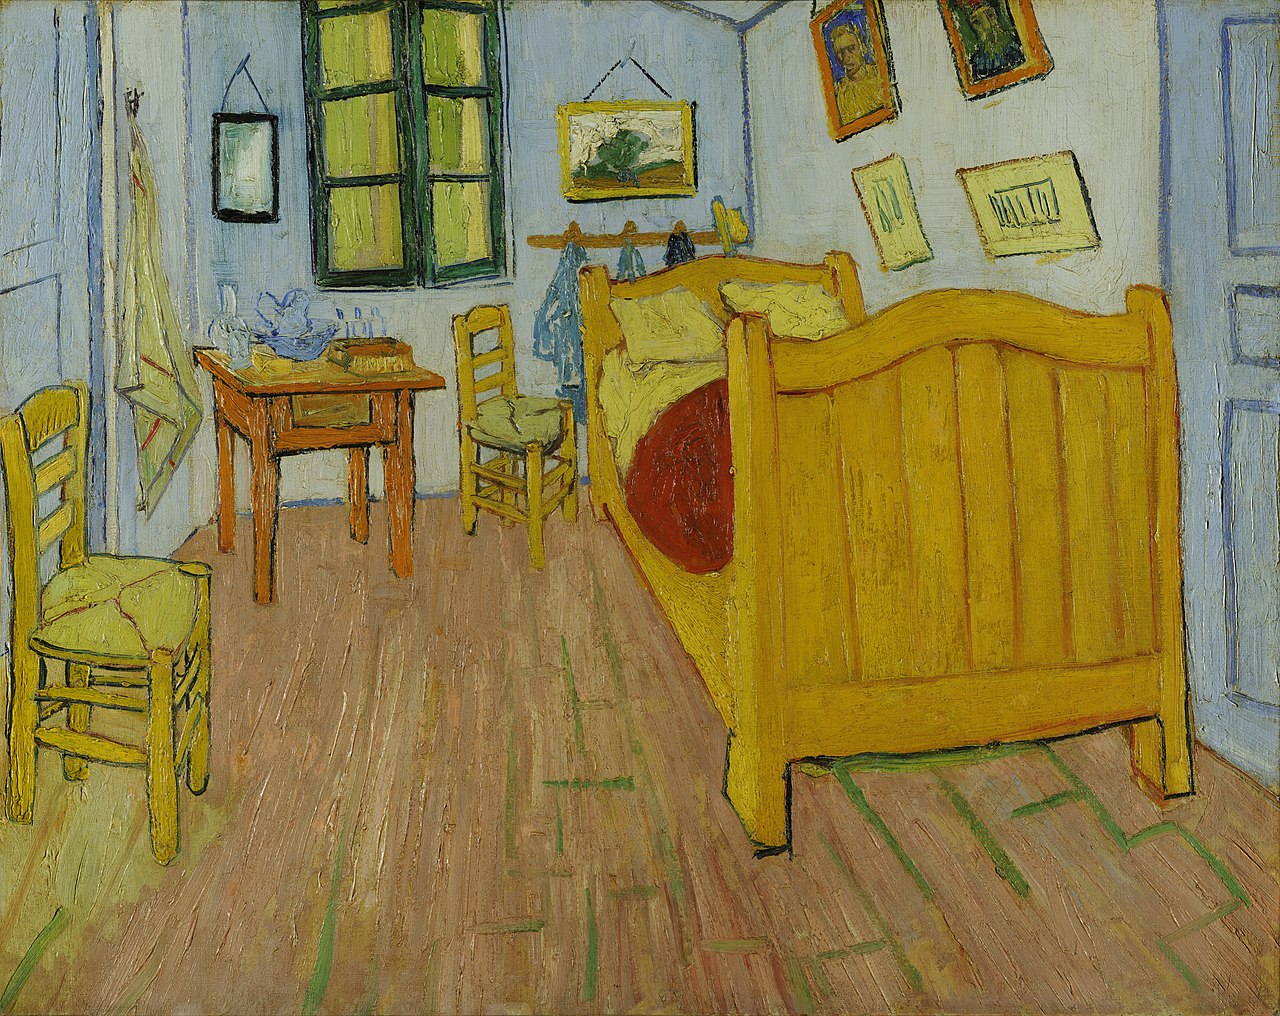 텅 빈 공간을 통해 작가는 자신의 삶을 객관화시키고 있다. 	Vincent van Gogh  (1853–1890), 'Bedroom in Arles', 1888,  72.4 * 91.3 cm,  Van Gogh Museum.